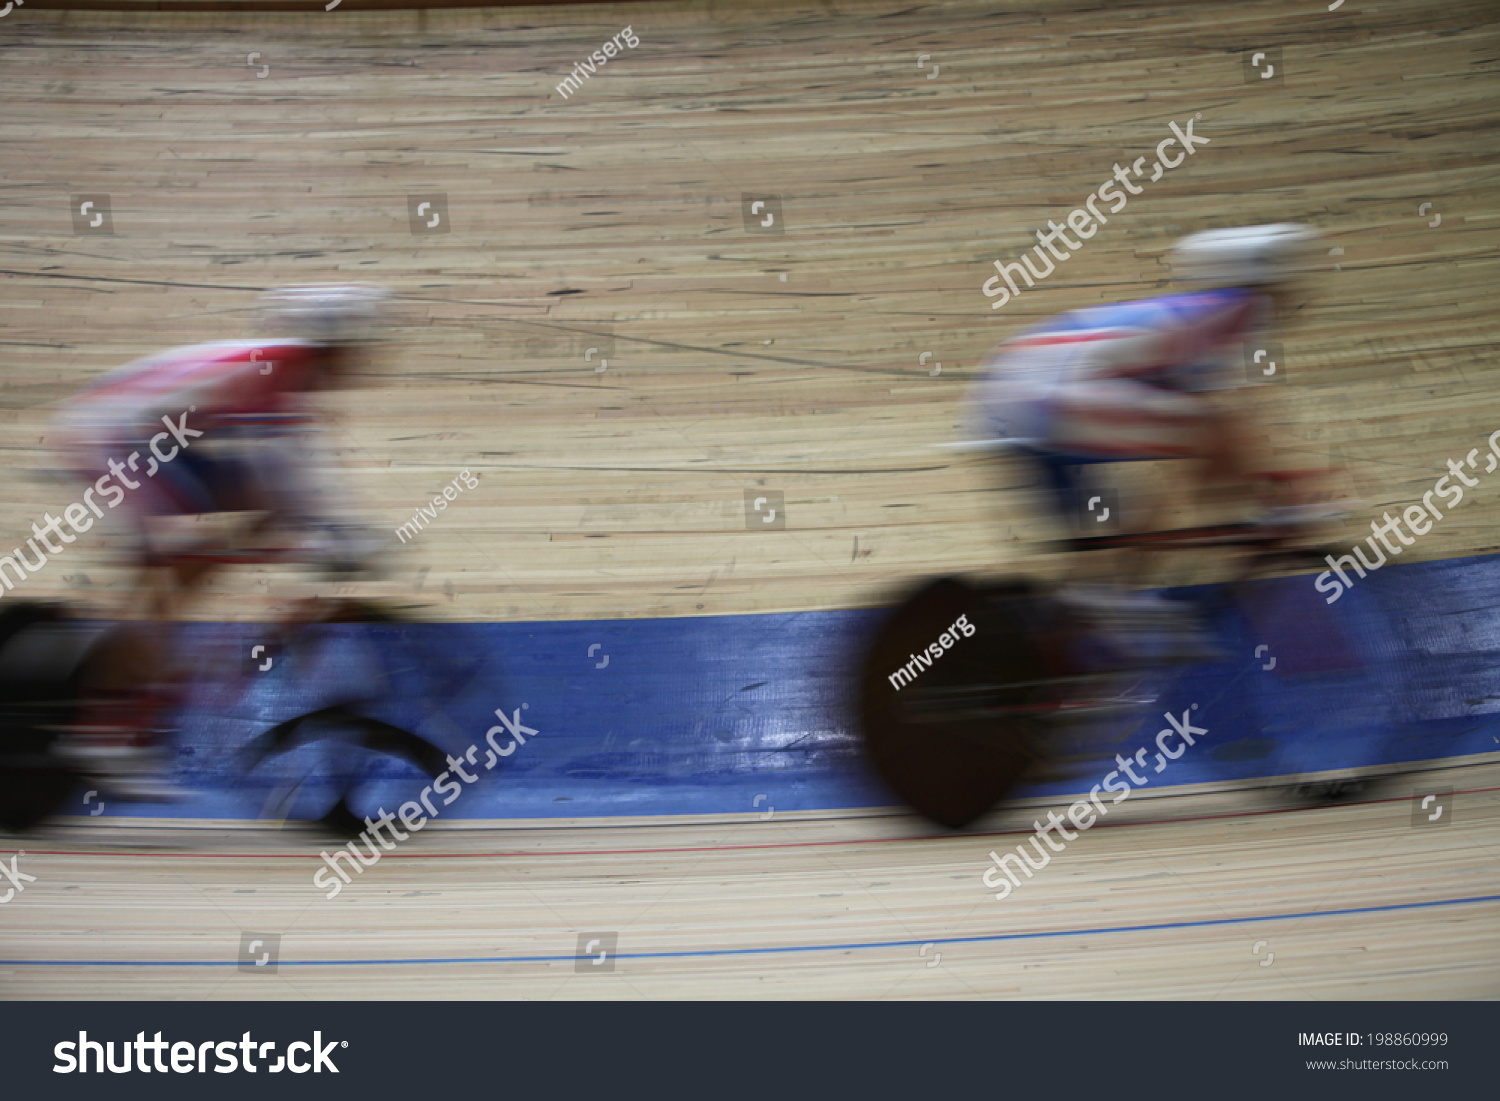 velodrome speed